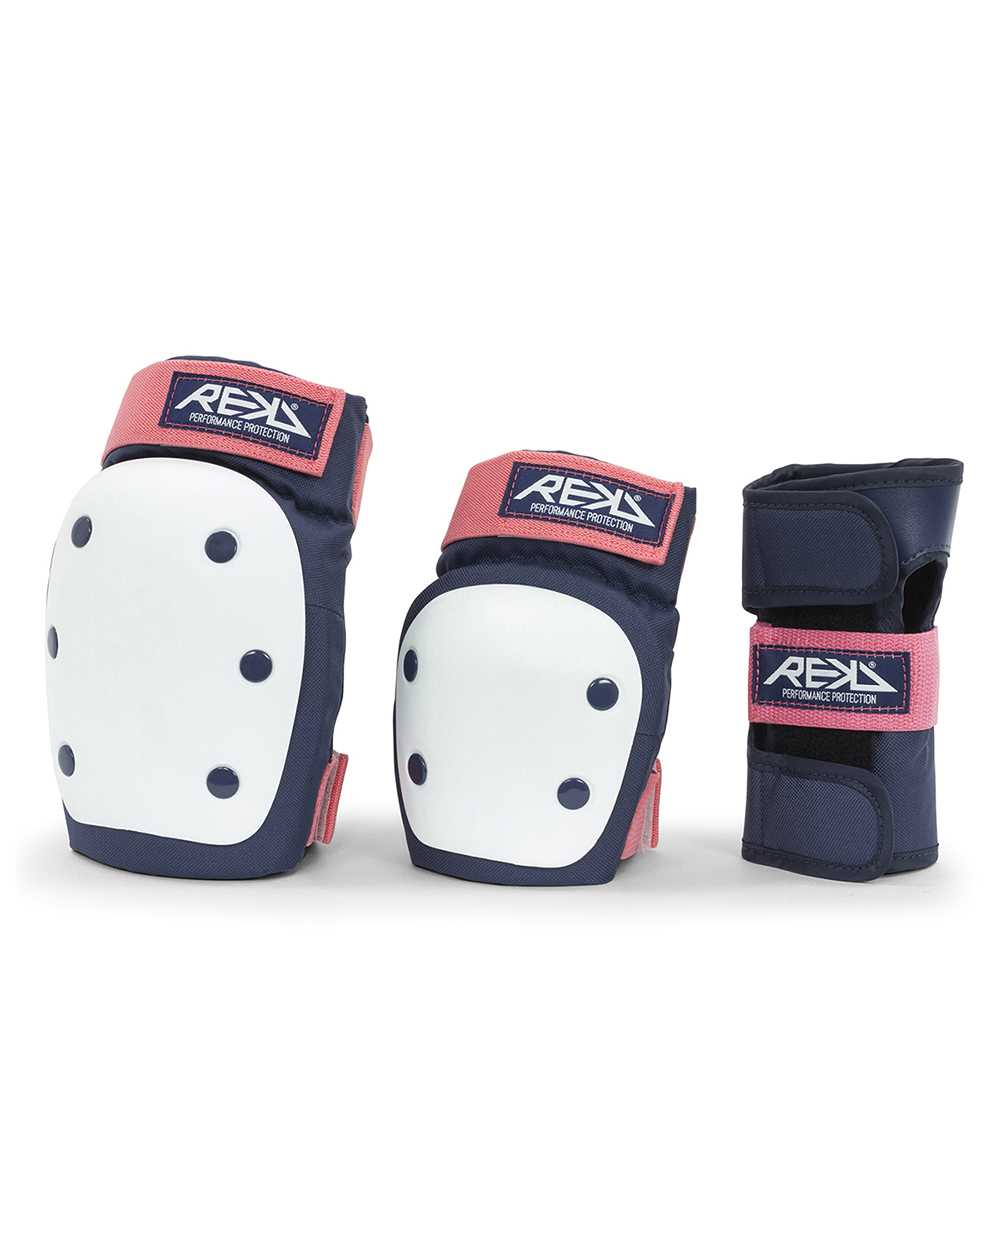 Rekd Protection Heavy Duty Skateboard Pad Set Blue/Pink